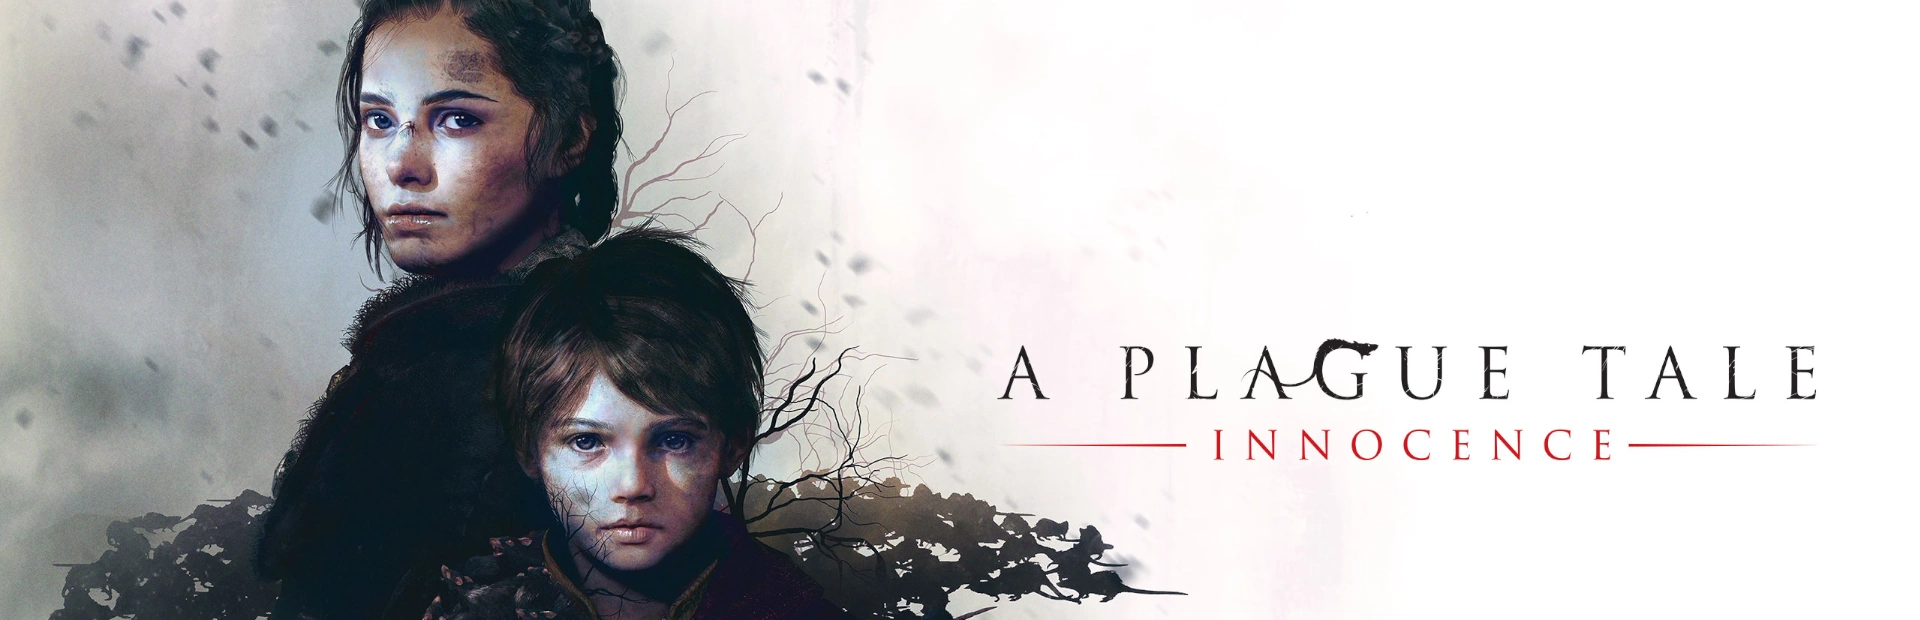 دانلود بازی A Plague Tale: Innocence برای کامپیوتر | گیمباتو